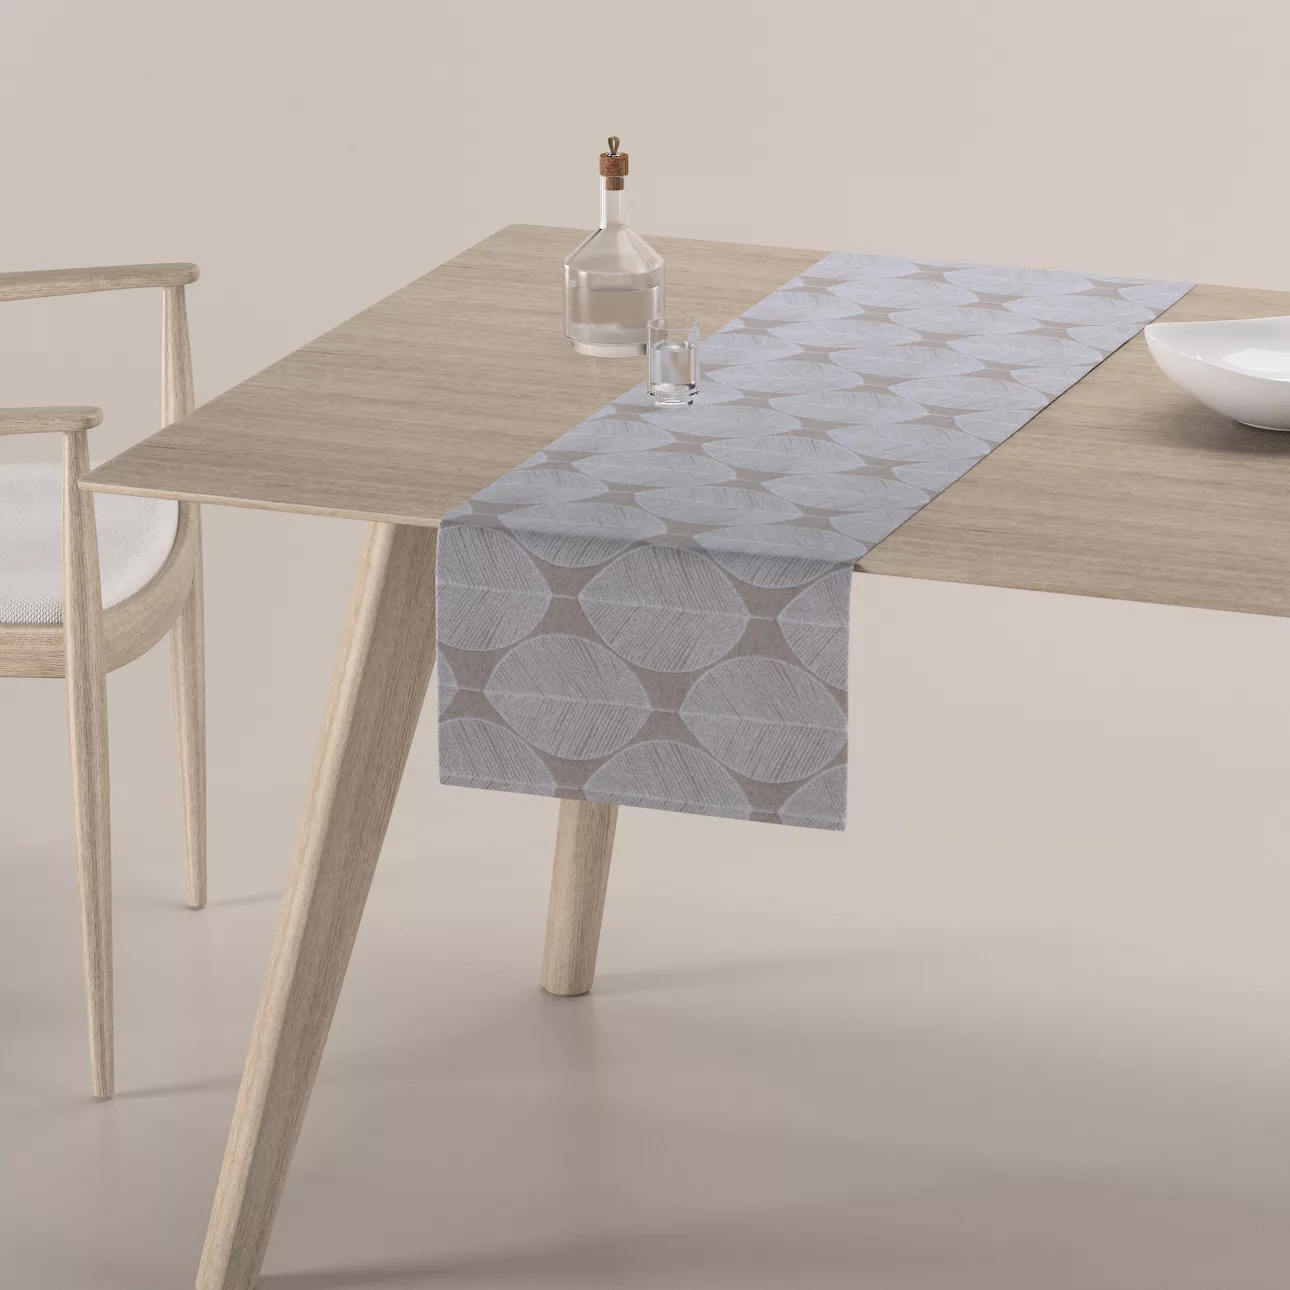 Tischläufer, beige-weiß, 40 x 130 cm, Sunny (143-85) günstig online kaufen